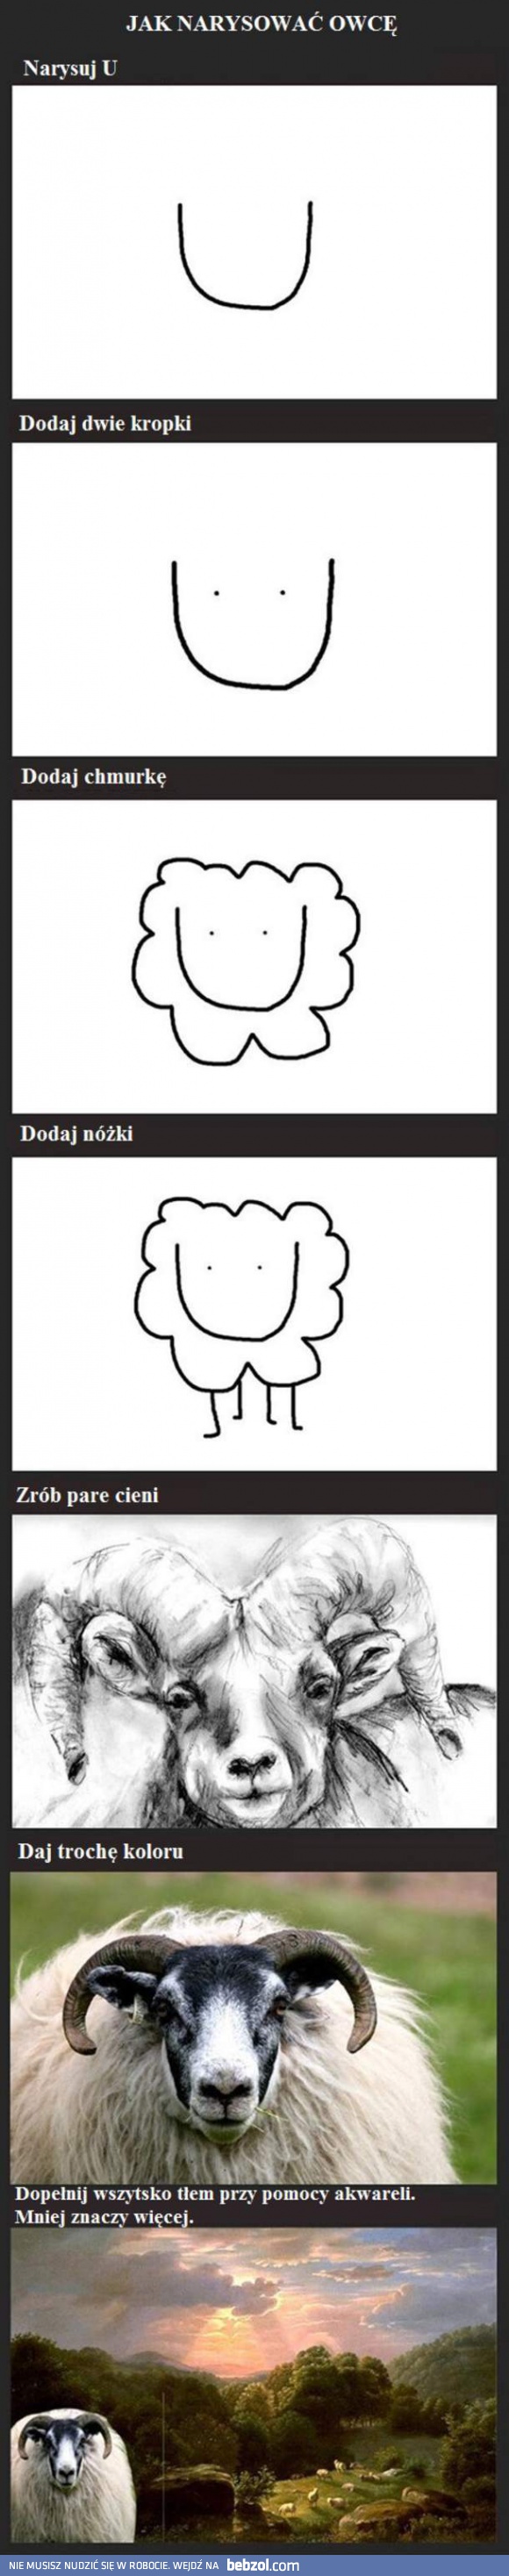 Jak narysować owcę?